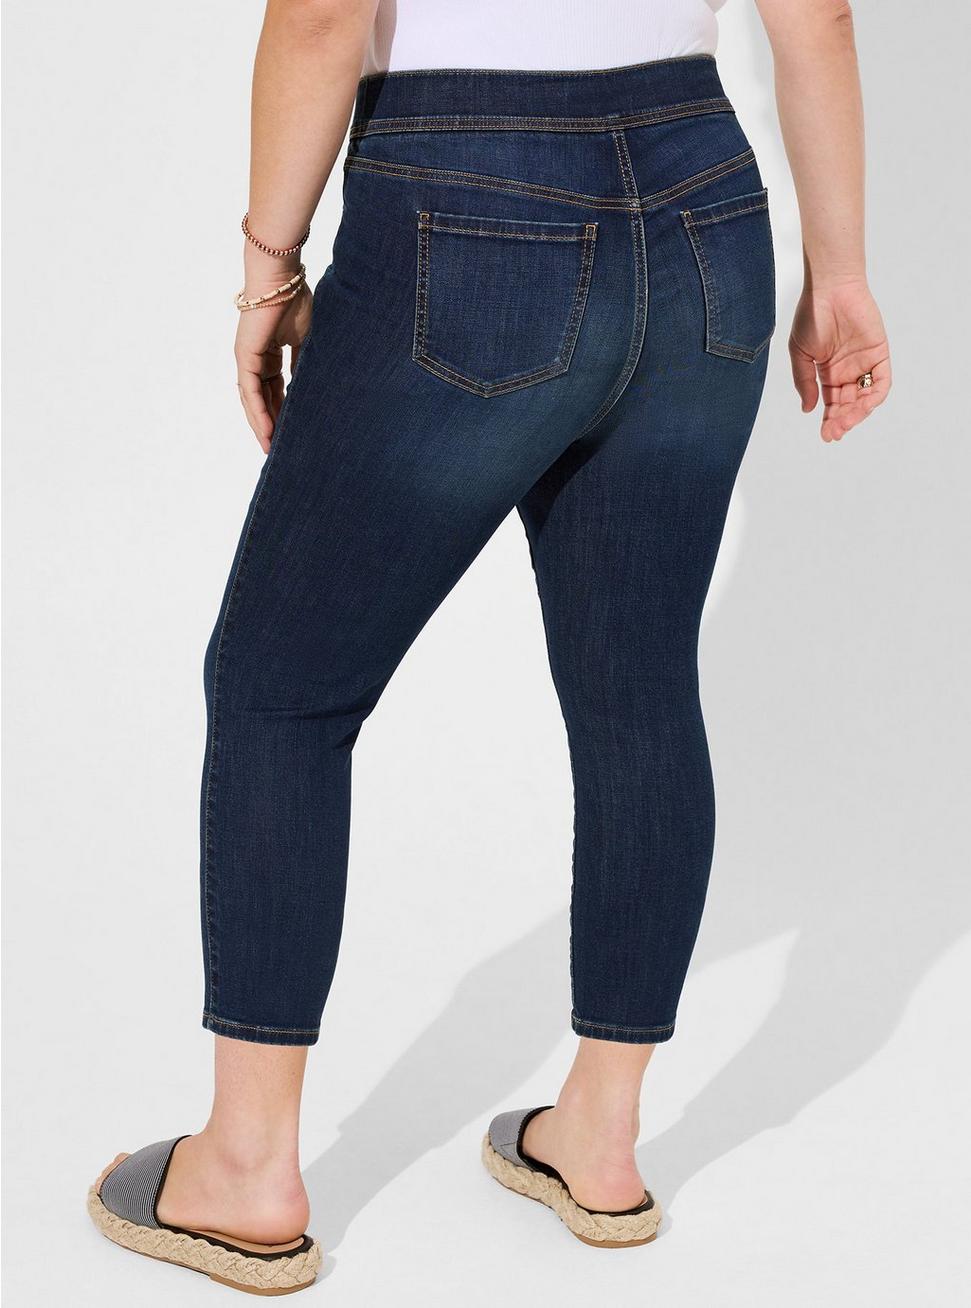 Crop Lean Jean Skinny Super Soft High-Rise Jean, HYDROSPHERE CLEAN, alternate